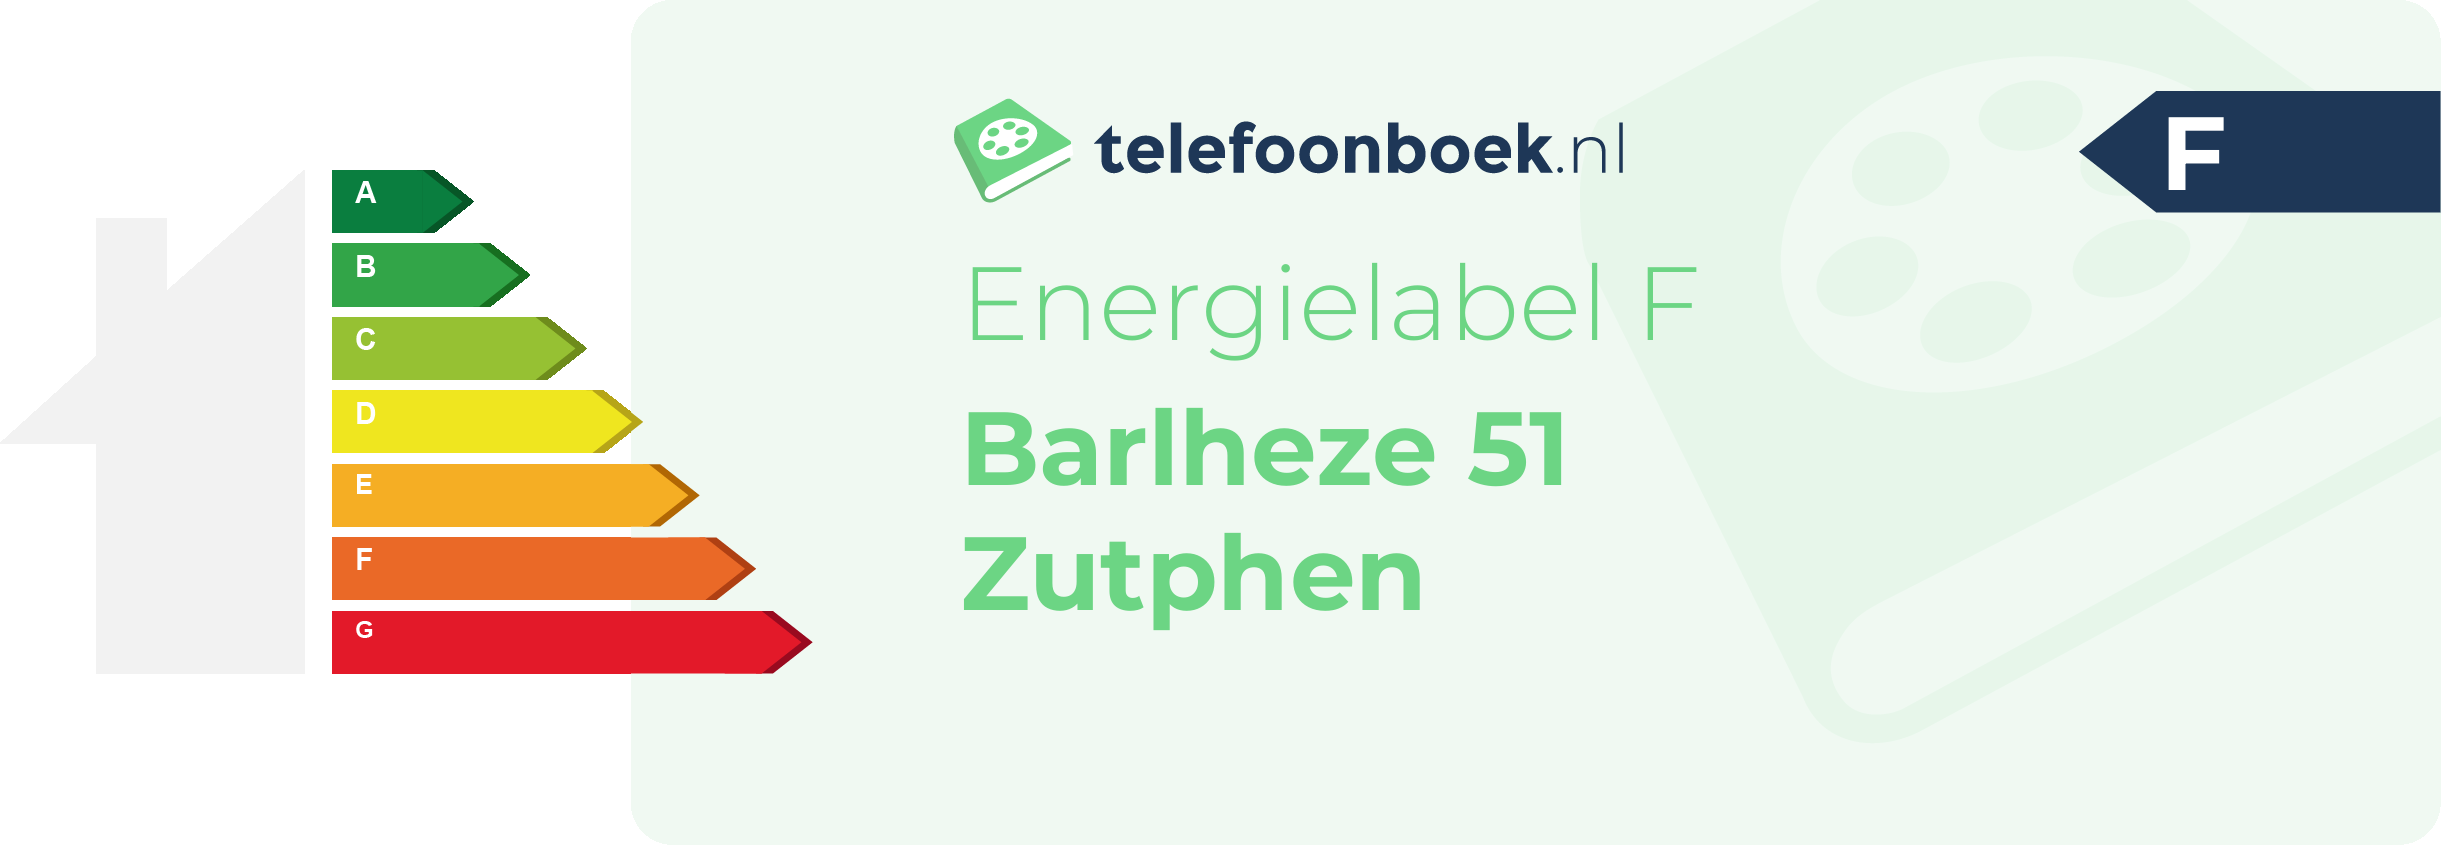 Energielabel Barlheze 51 Zutphen